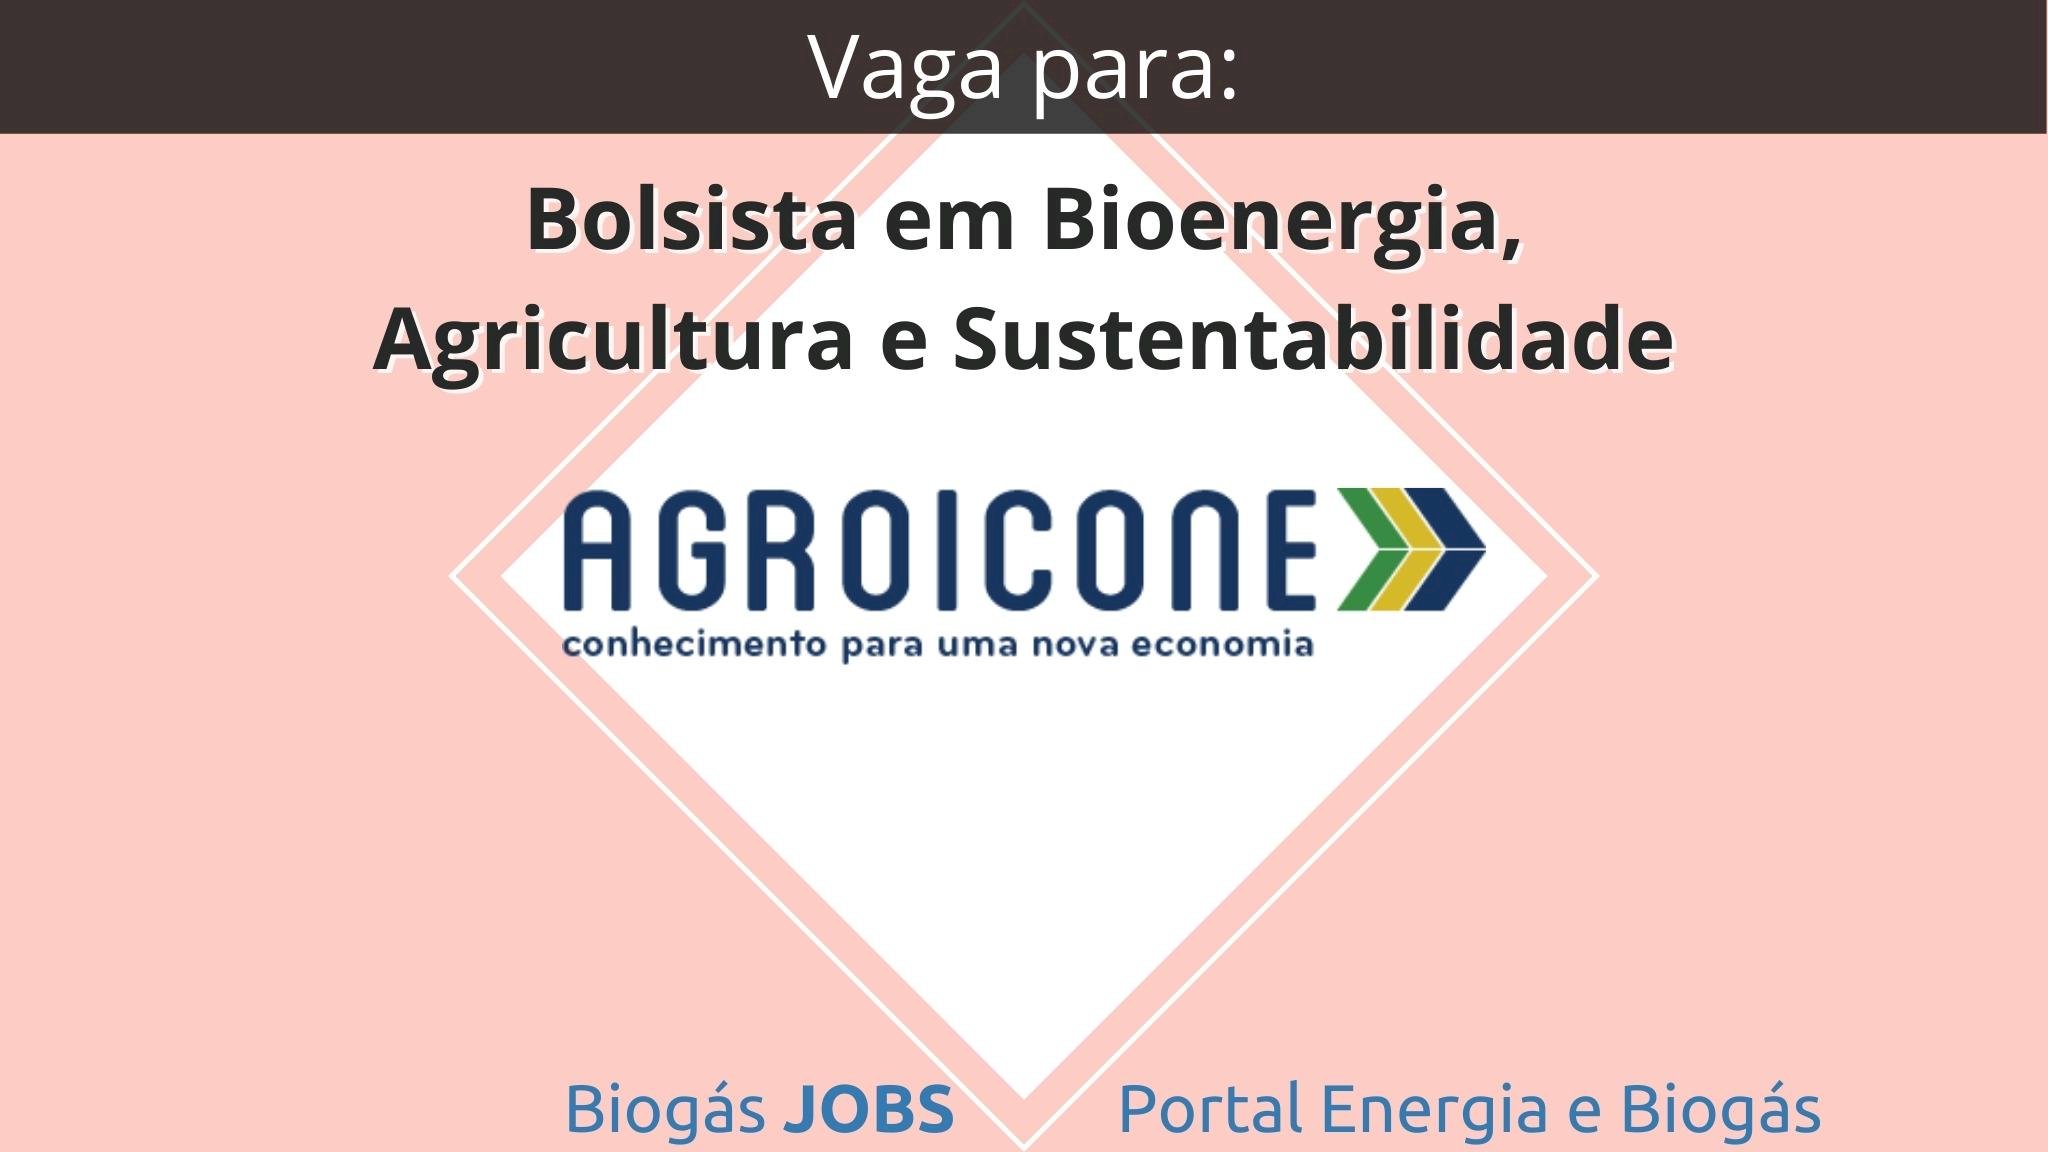 Vaga para Bolsista em Bioenergia, Agricultura e Sustentabilidade